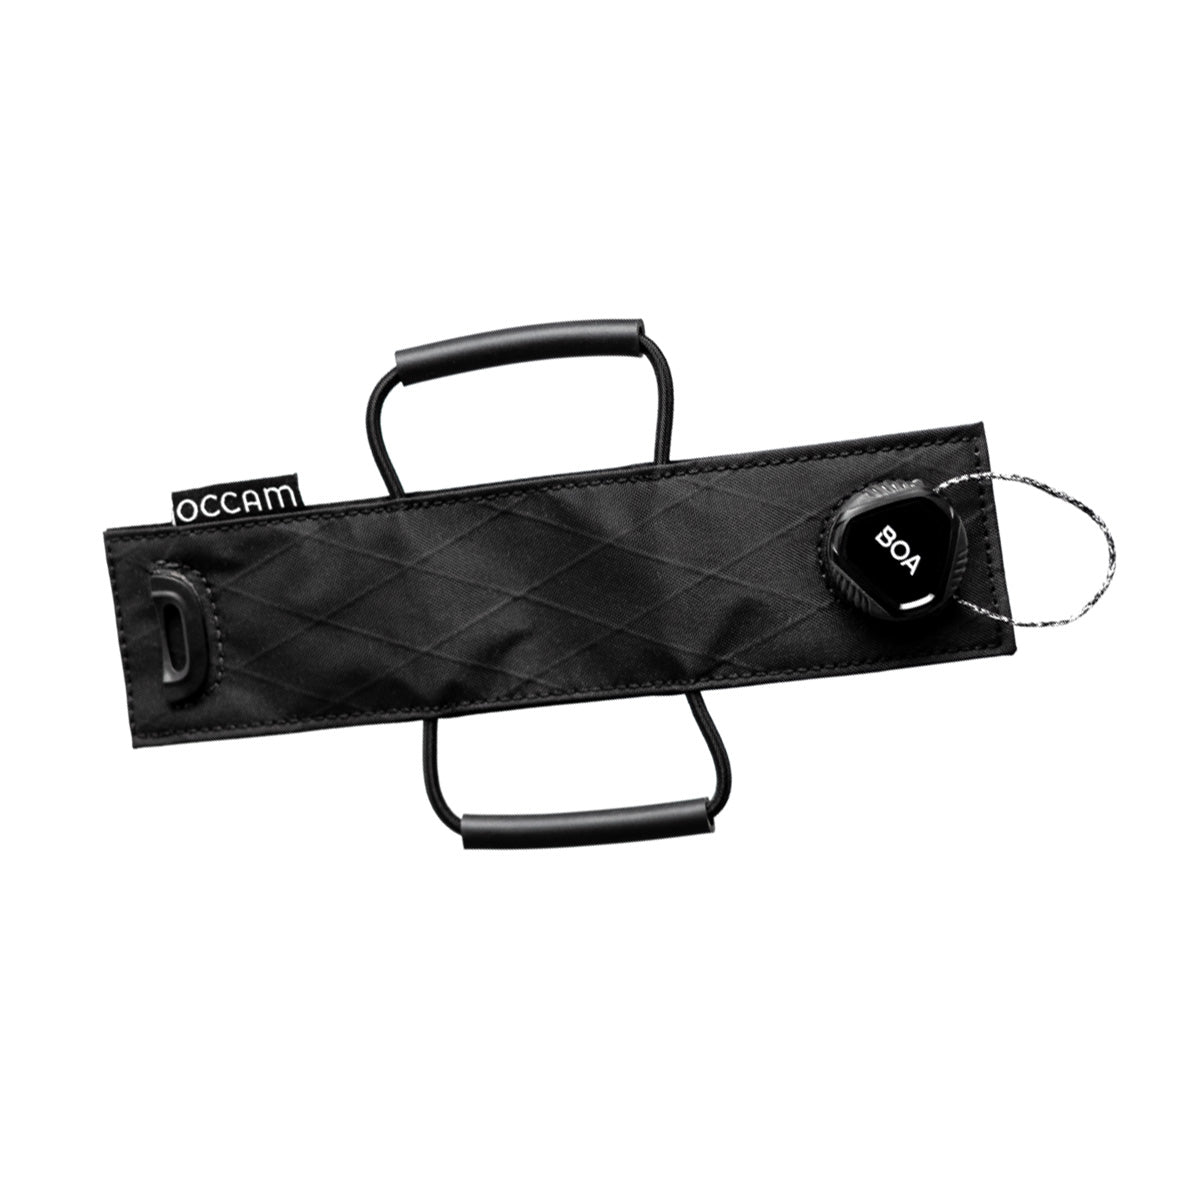 Occam Designs Apex Strap accesory strap Black